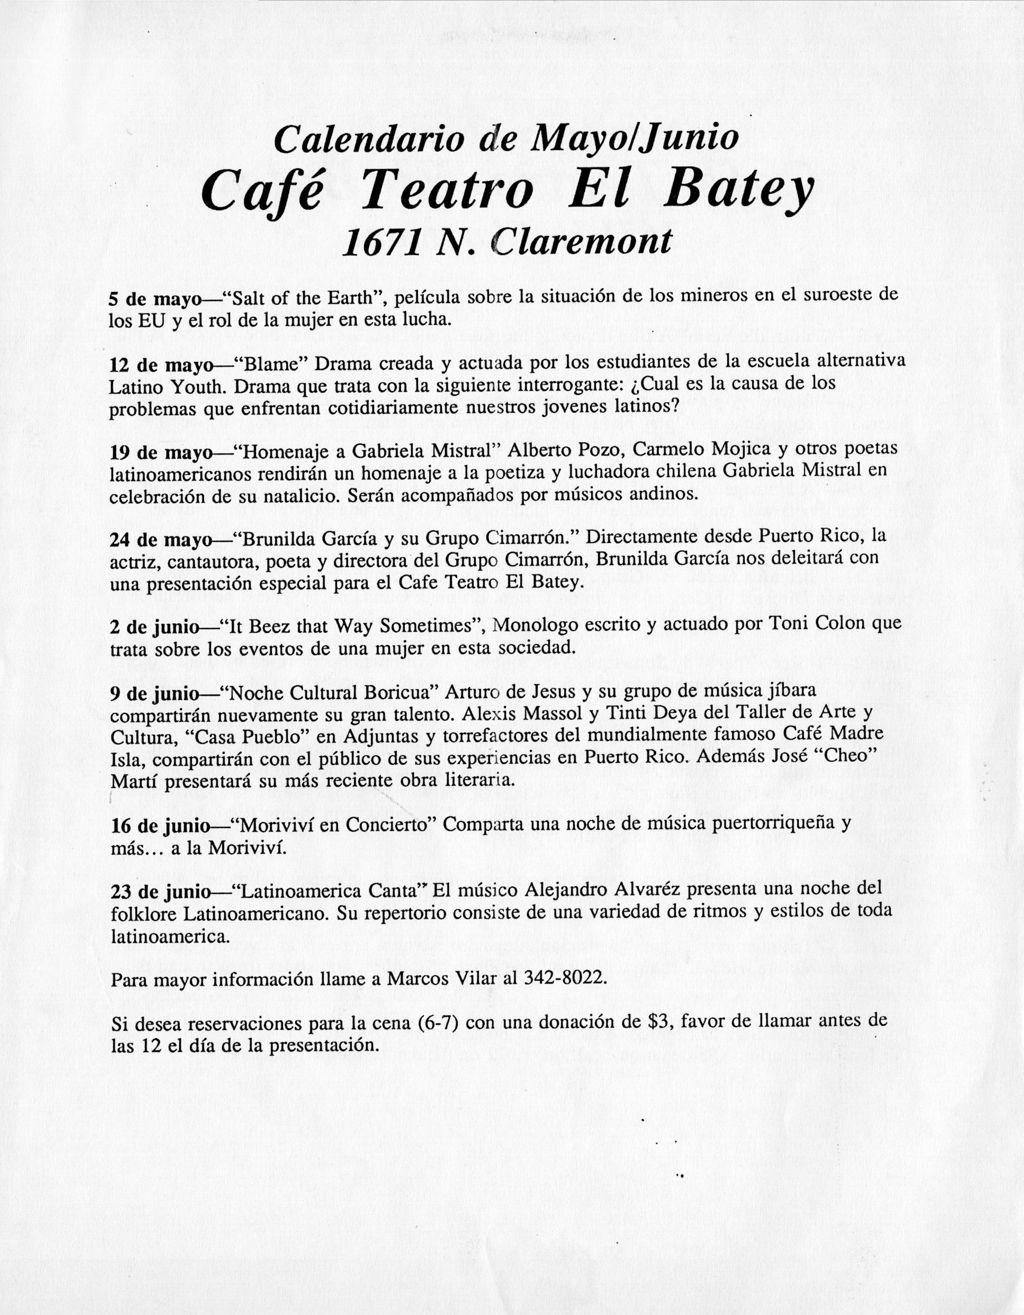 Miniature of Calendario de Mayo/Junio Cafe Teatro el Batey